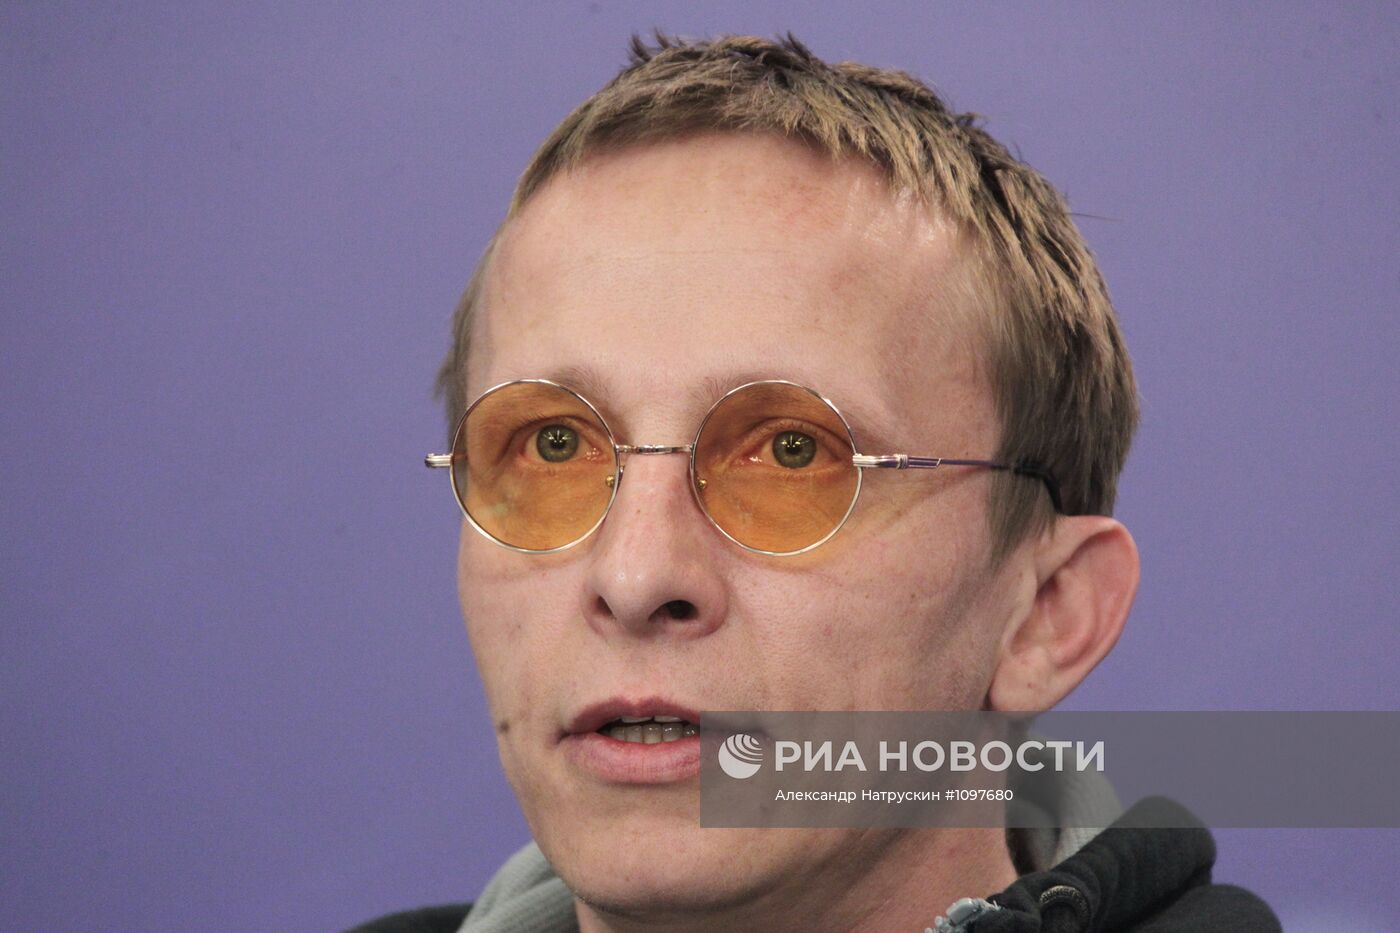 Пресс-конференция Ивана Охлобыстина в агентстве РИА Новости